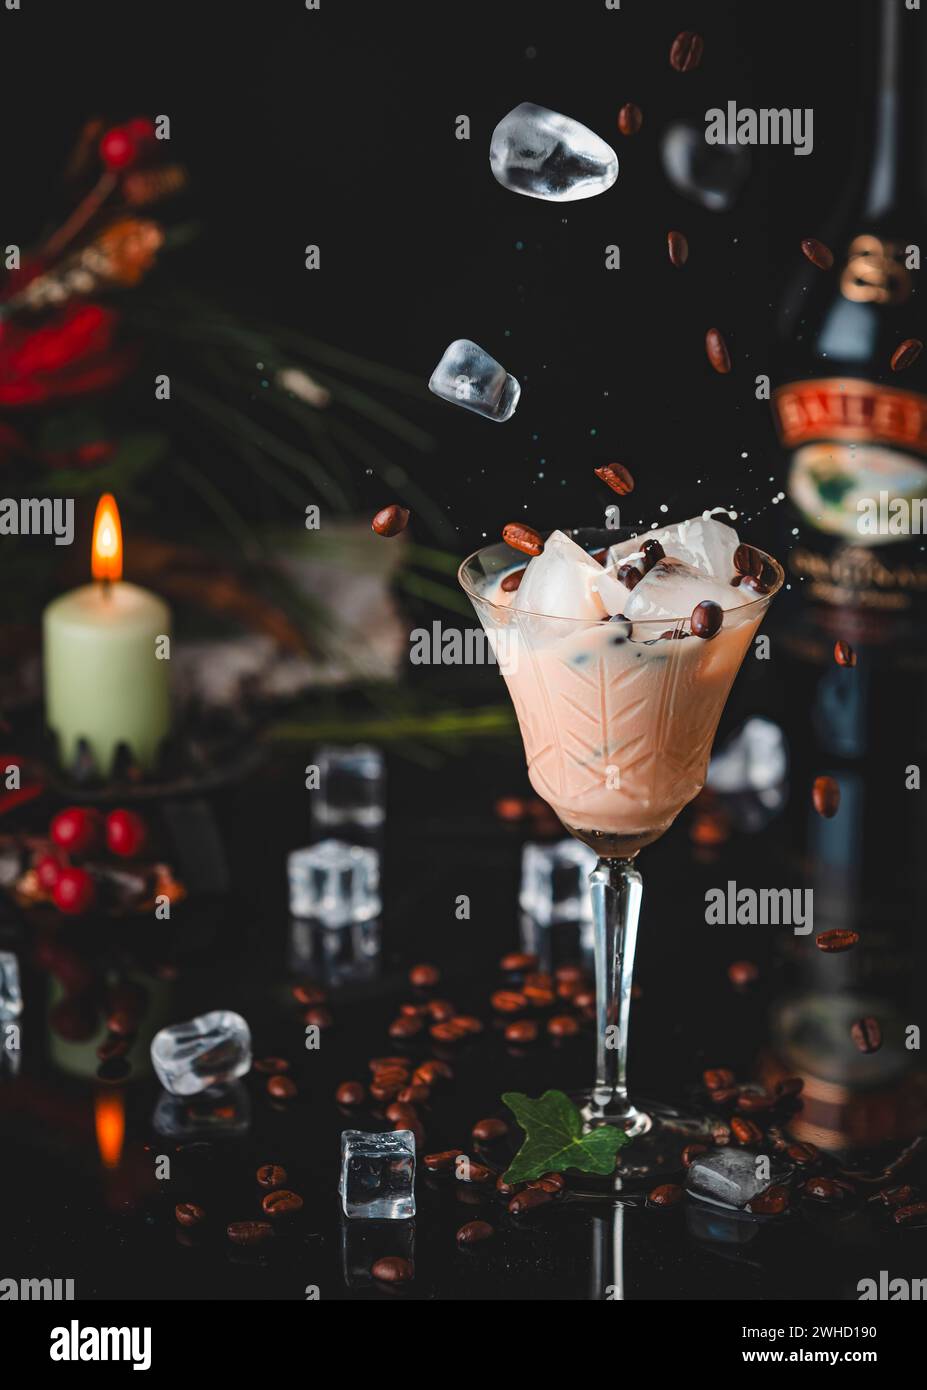 Una imagen atmosférica con una bebida, Baileys en un vaso, cubitos de hielo y granos de café Foto de stock